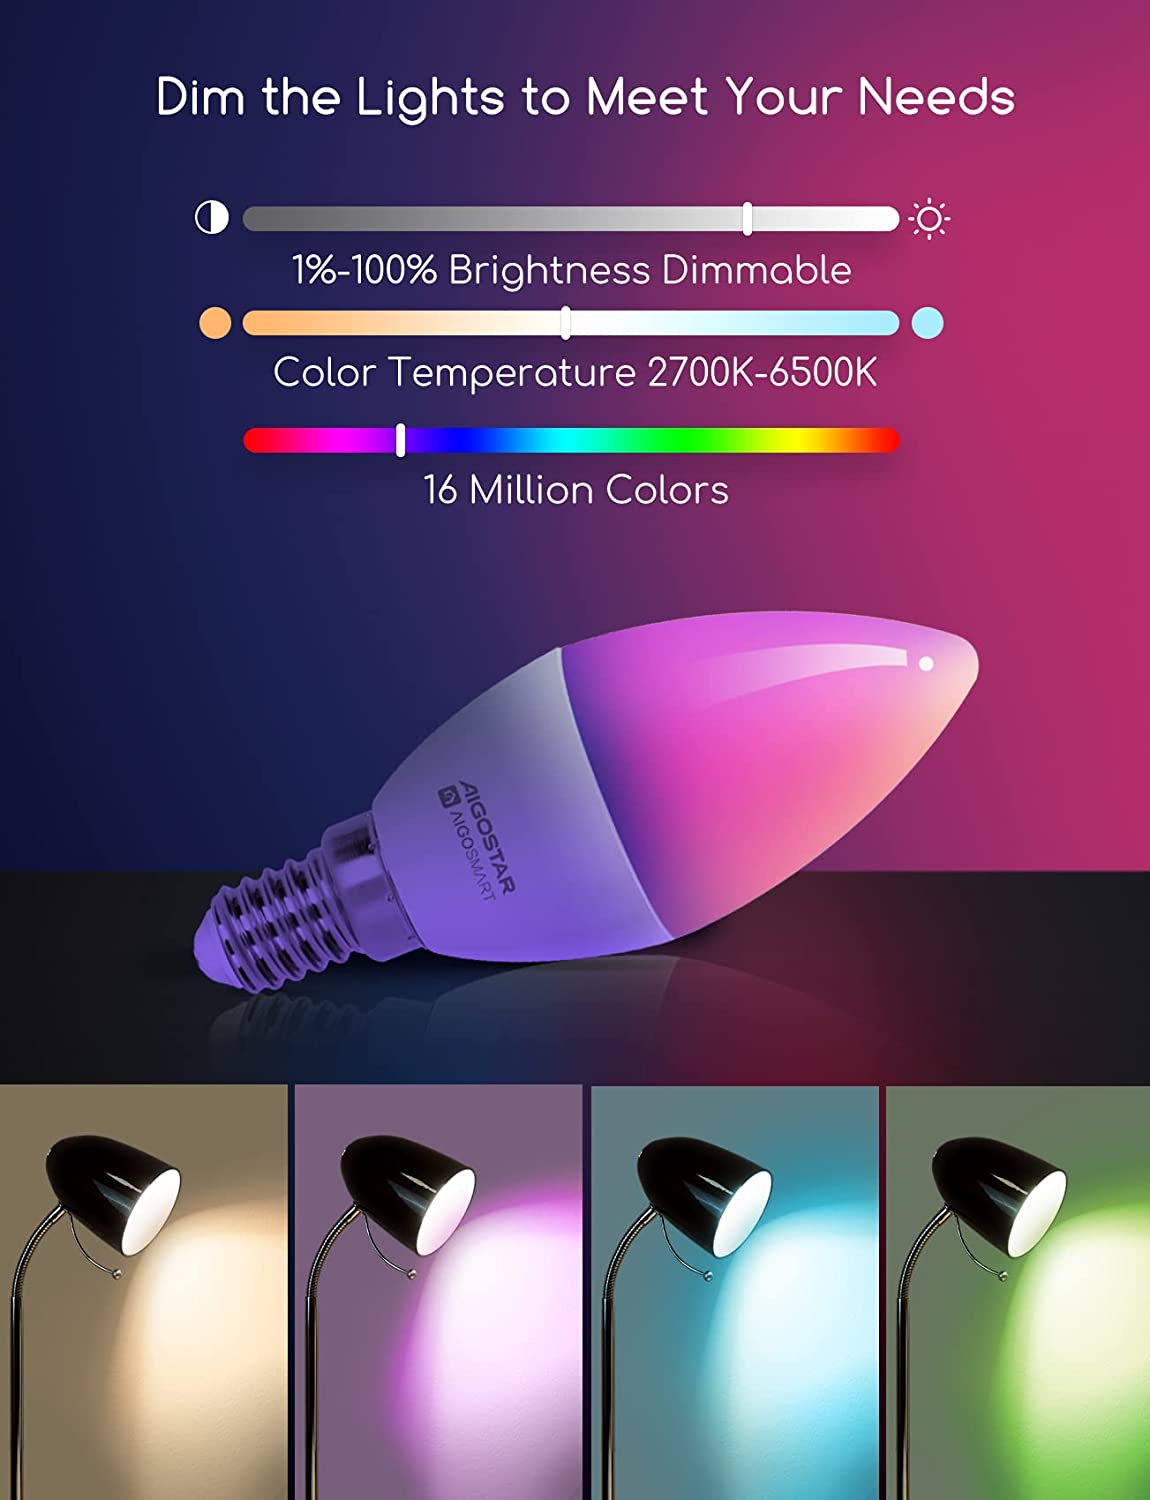 Cinque lampadine smart E27 Aigostar compatibili Alexa: -20% su